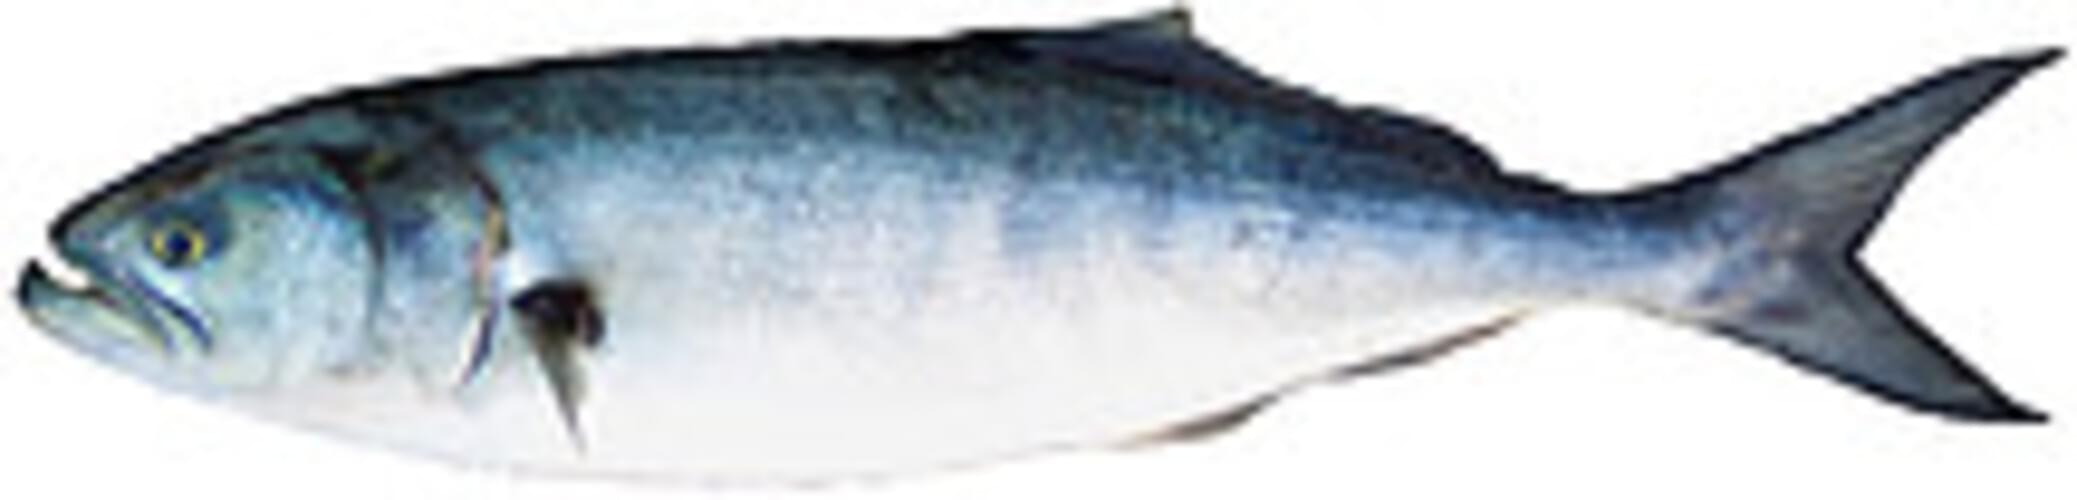 bluefish fish